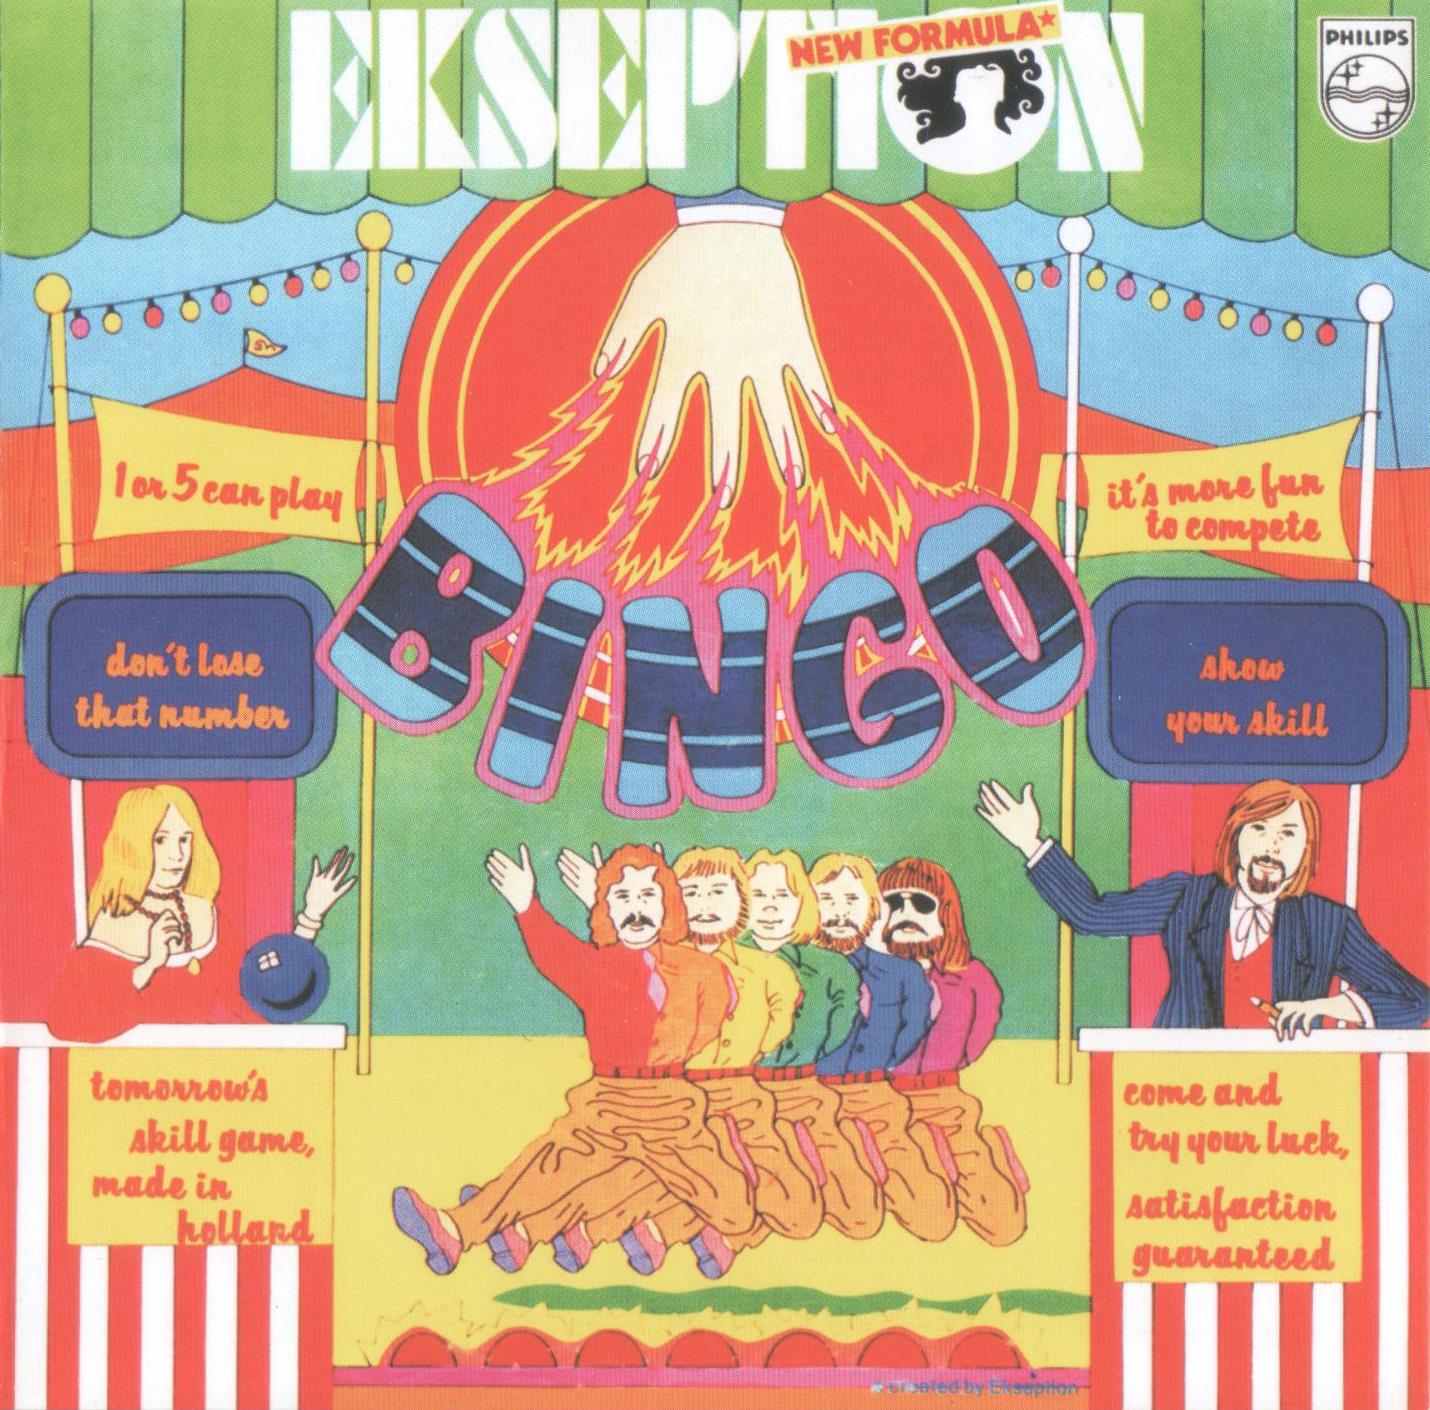 Ekseption - Bingo 1974 2019